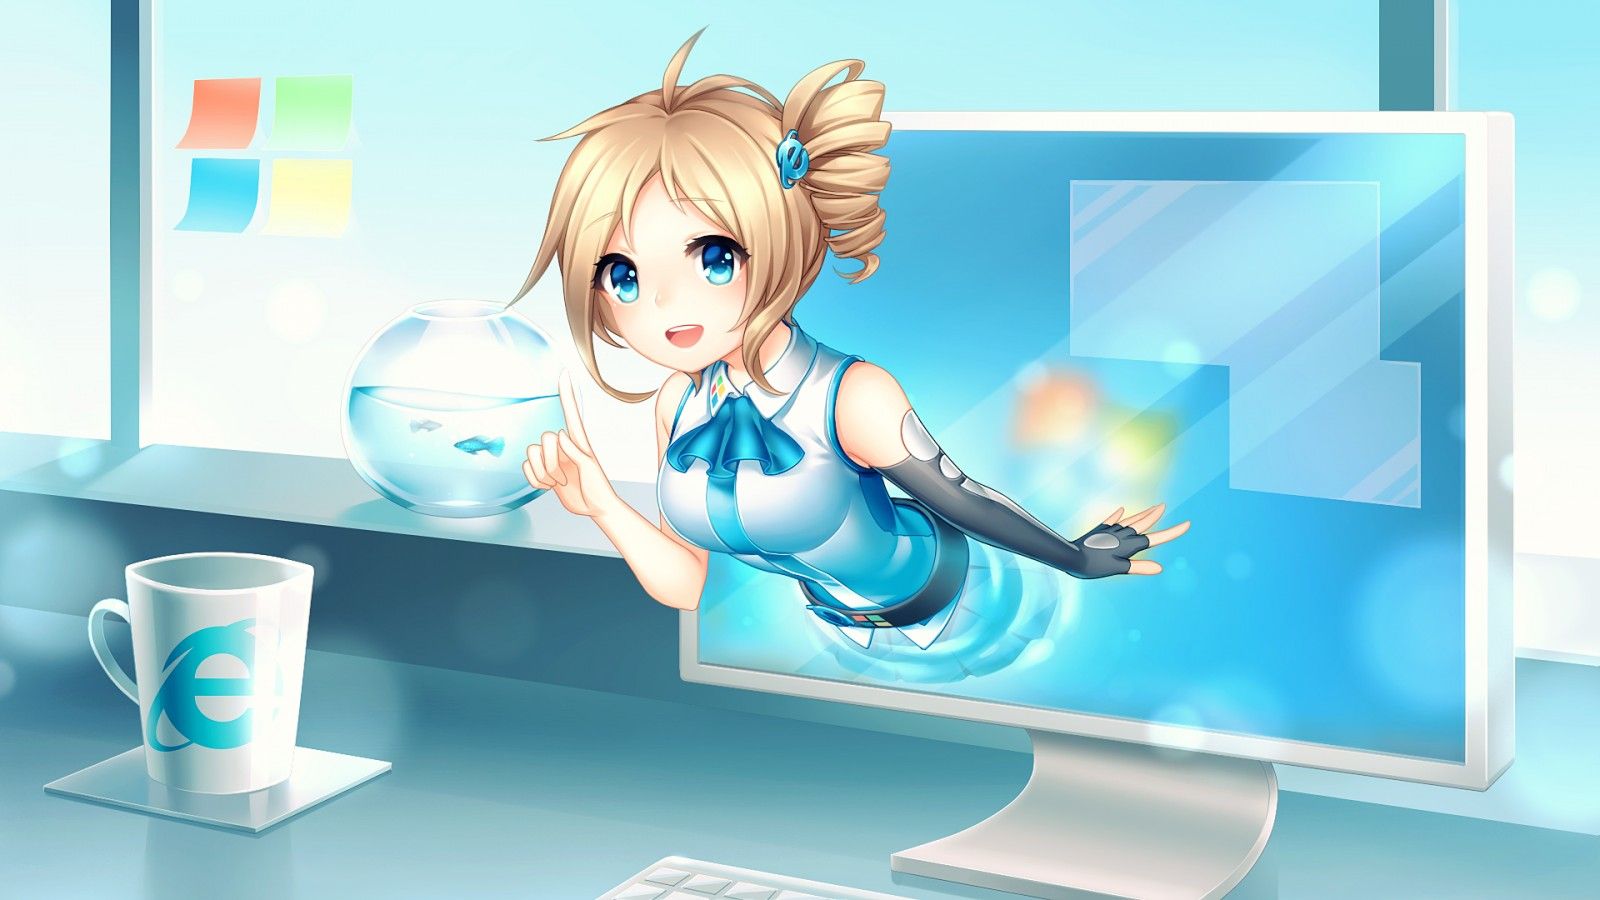 live anime wallpaper for windows 10